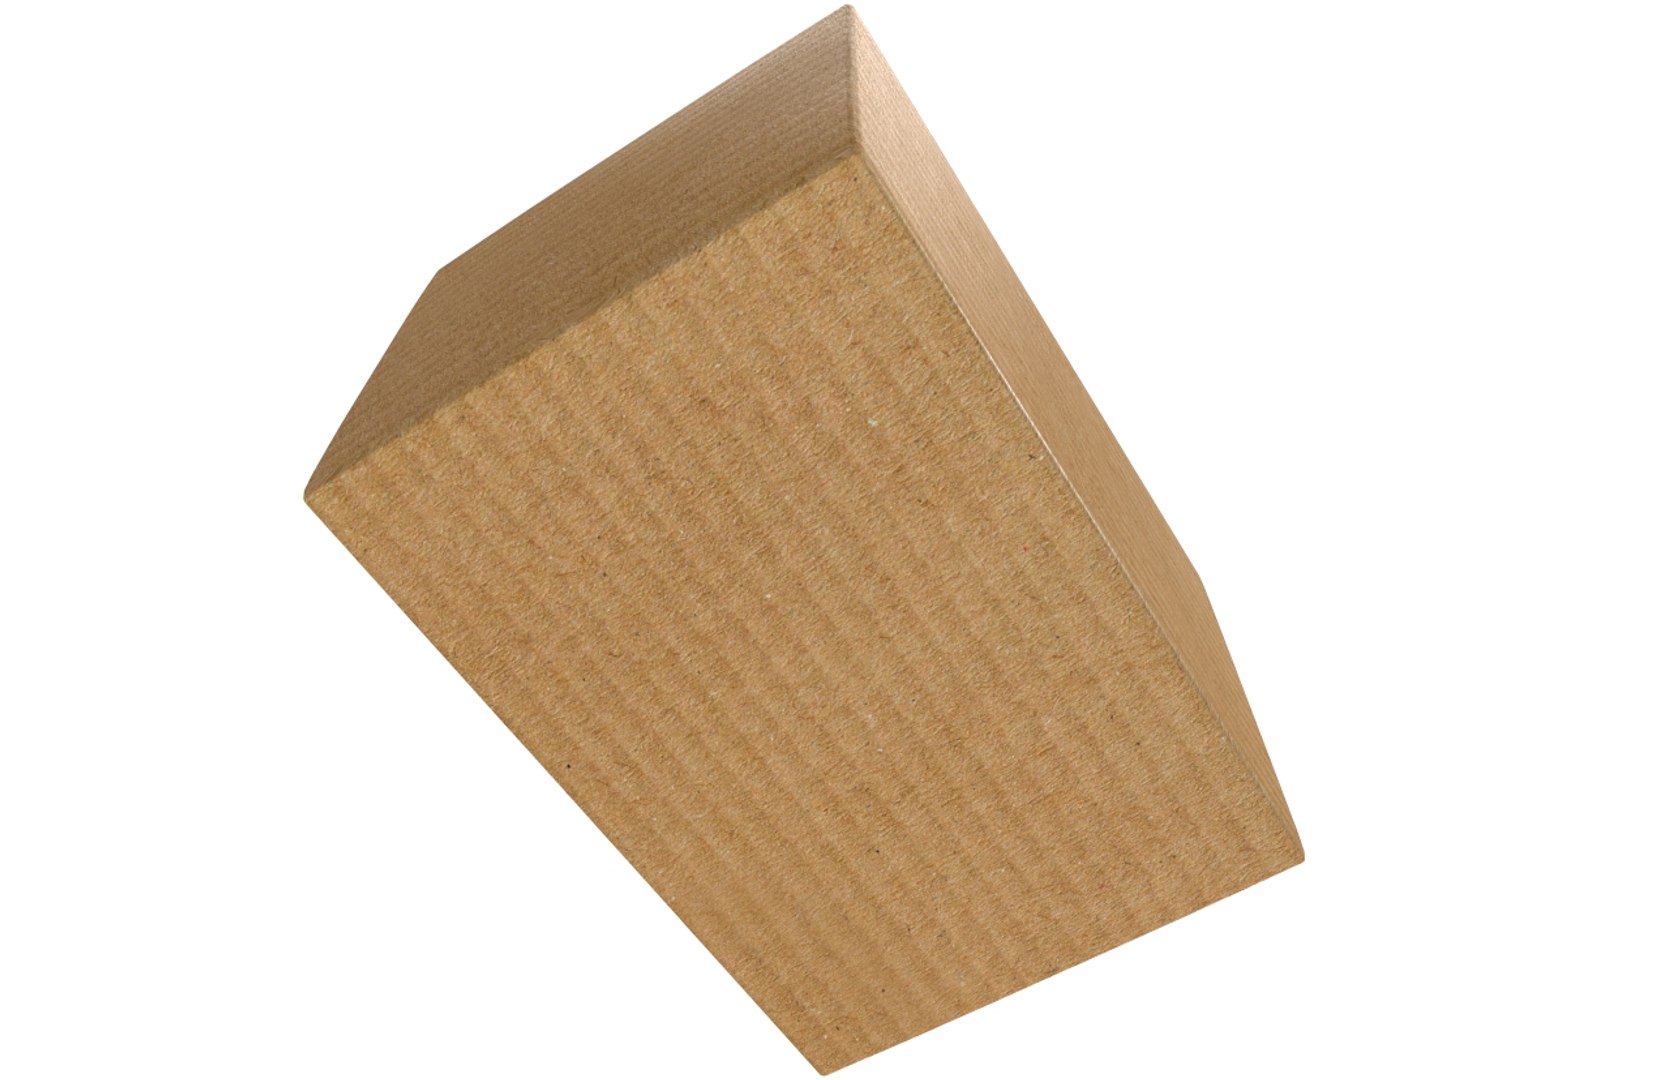 3D Cardboard Box - TurboSquid 1601658